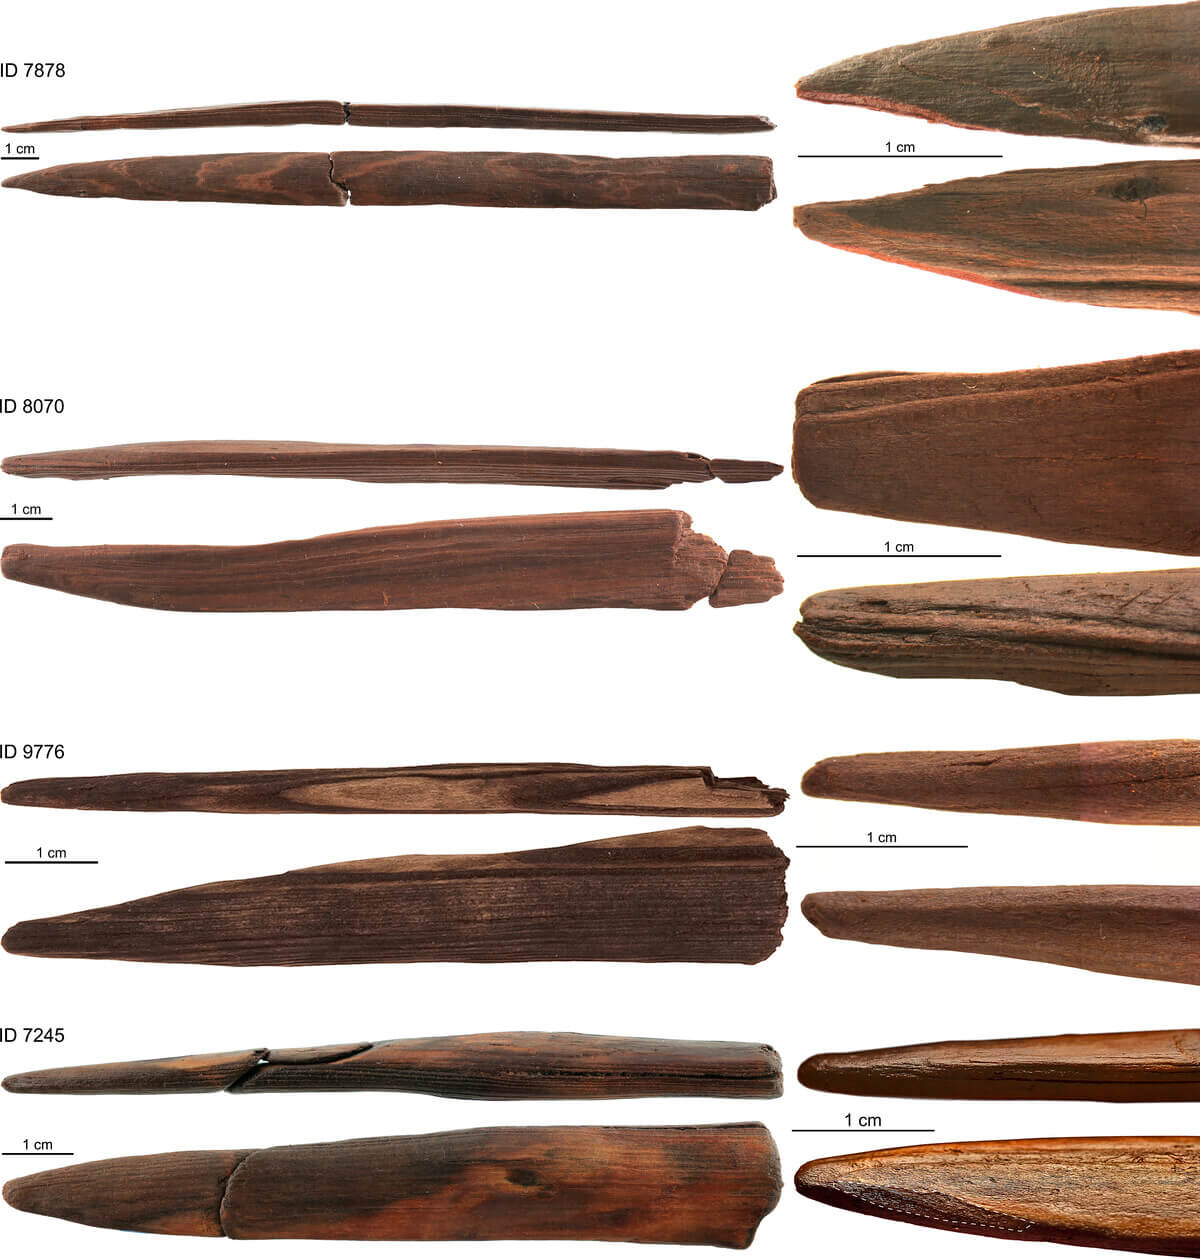 Кто и зачем изготовил в каменном веке деревянное оружие. Для изготовления орудий древние люди использовали сложную технологию обработки древесины. Источник фото: www.pnas.org. Фото.